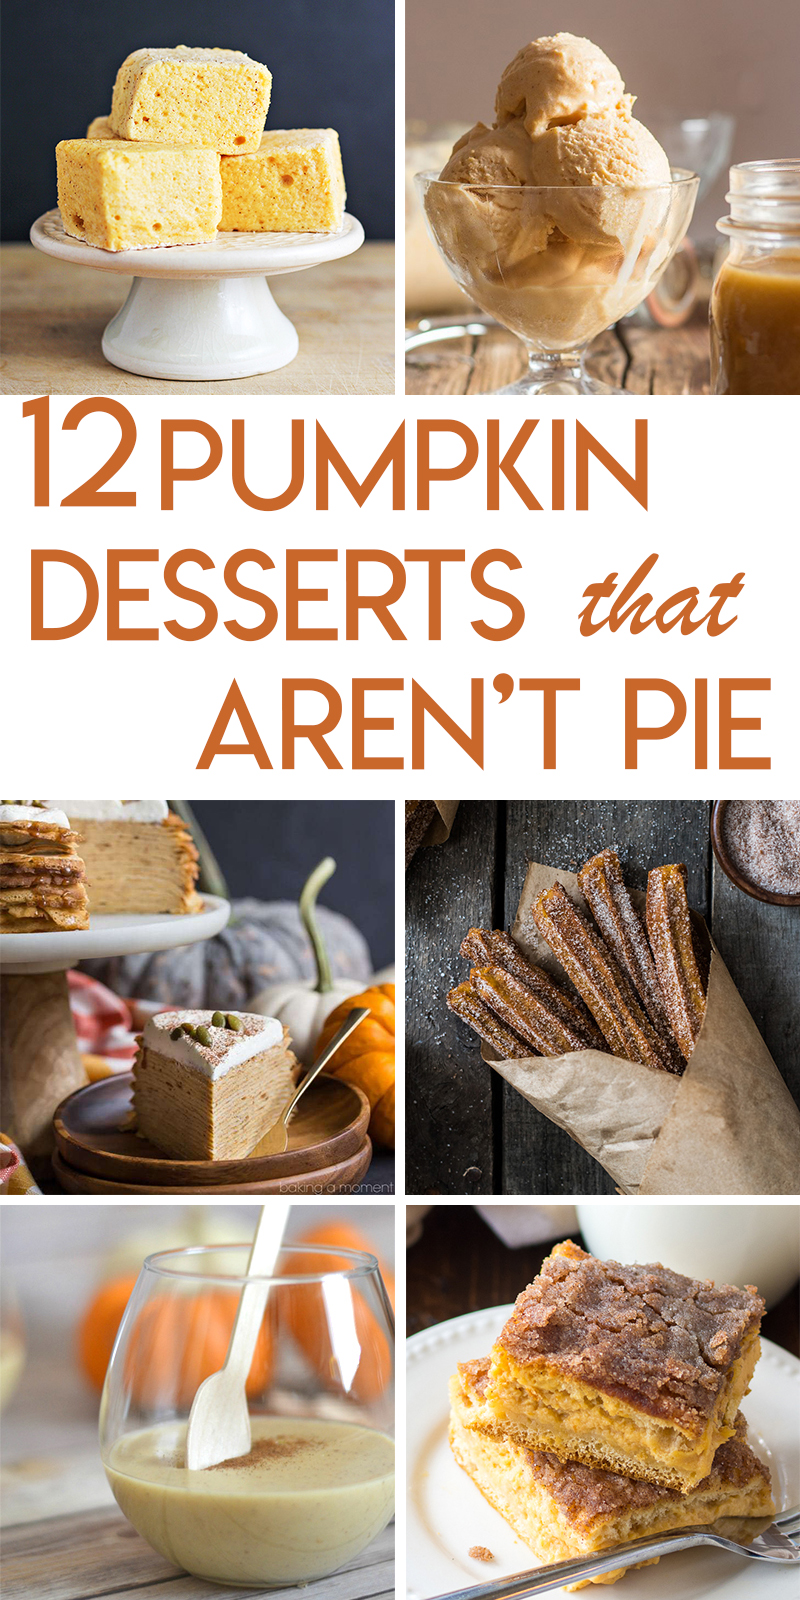 12 Pumpkin Desserts that AREN’T Pie | Random Acts of Baking